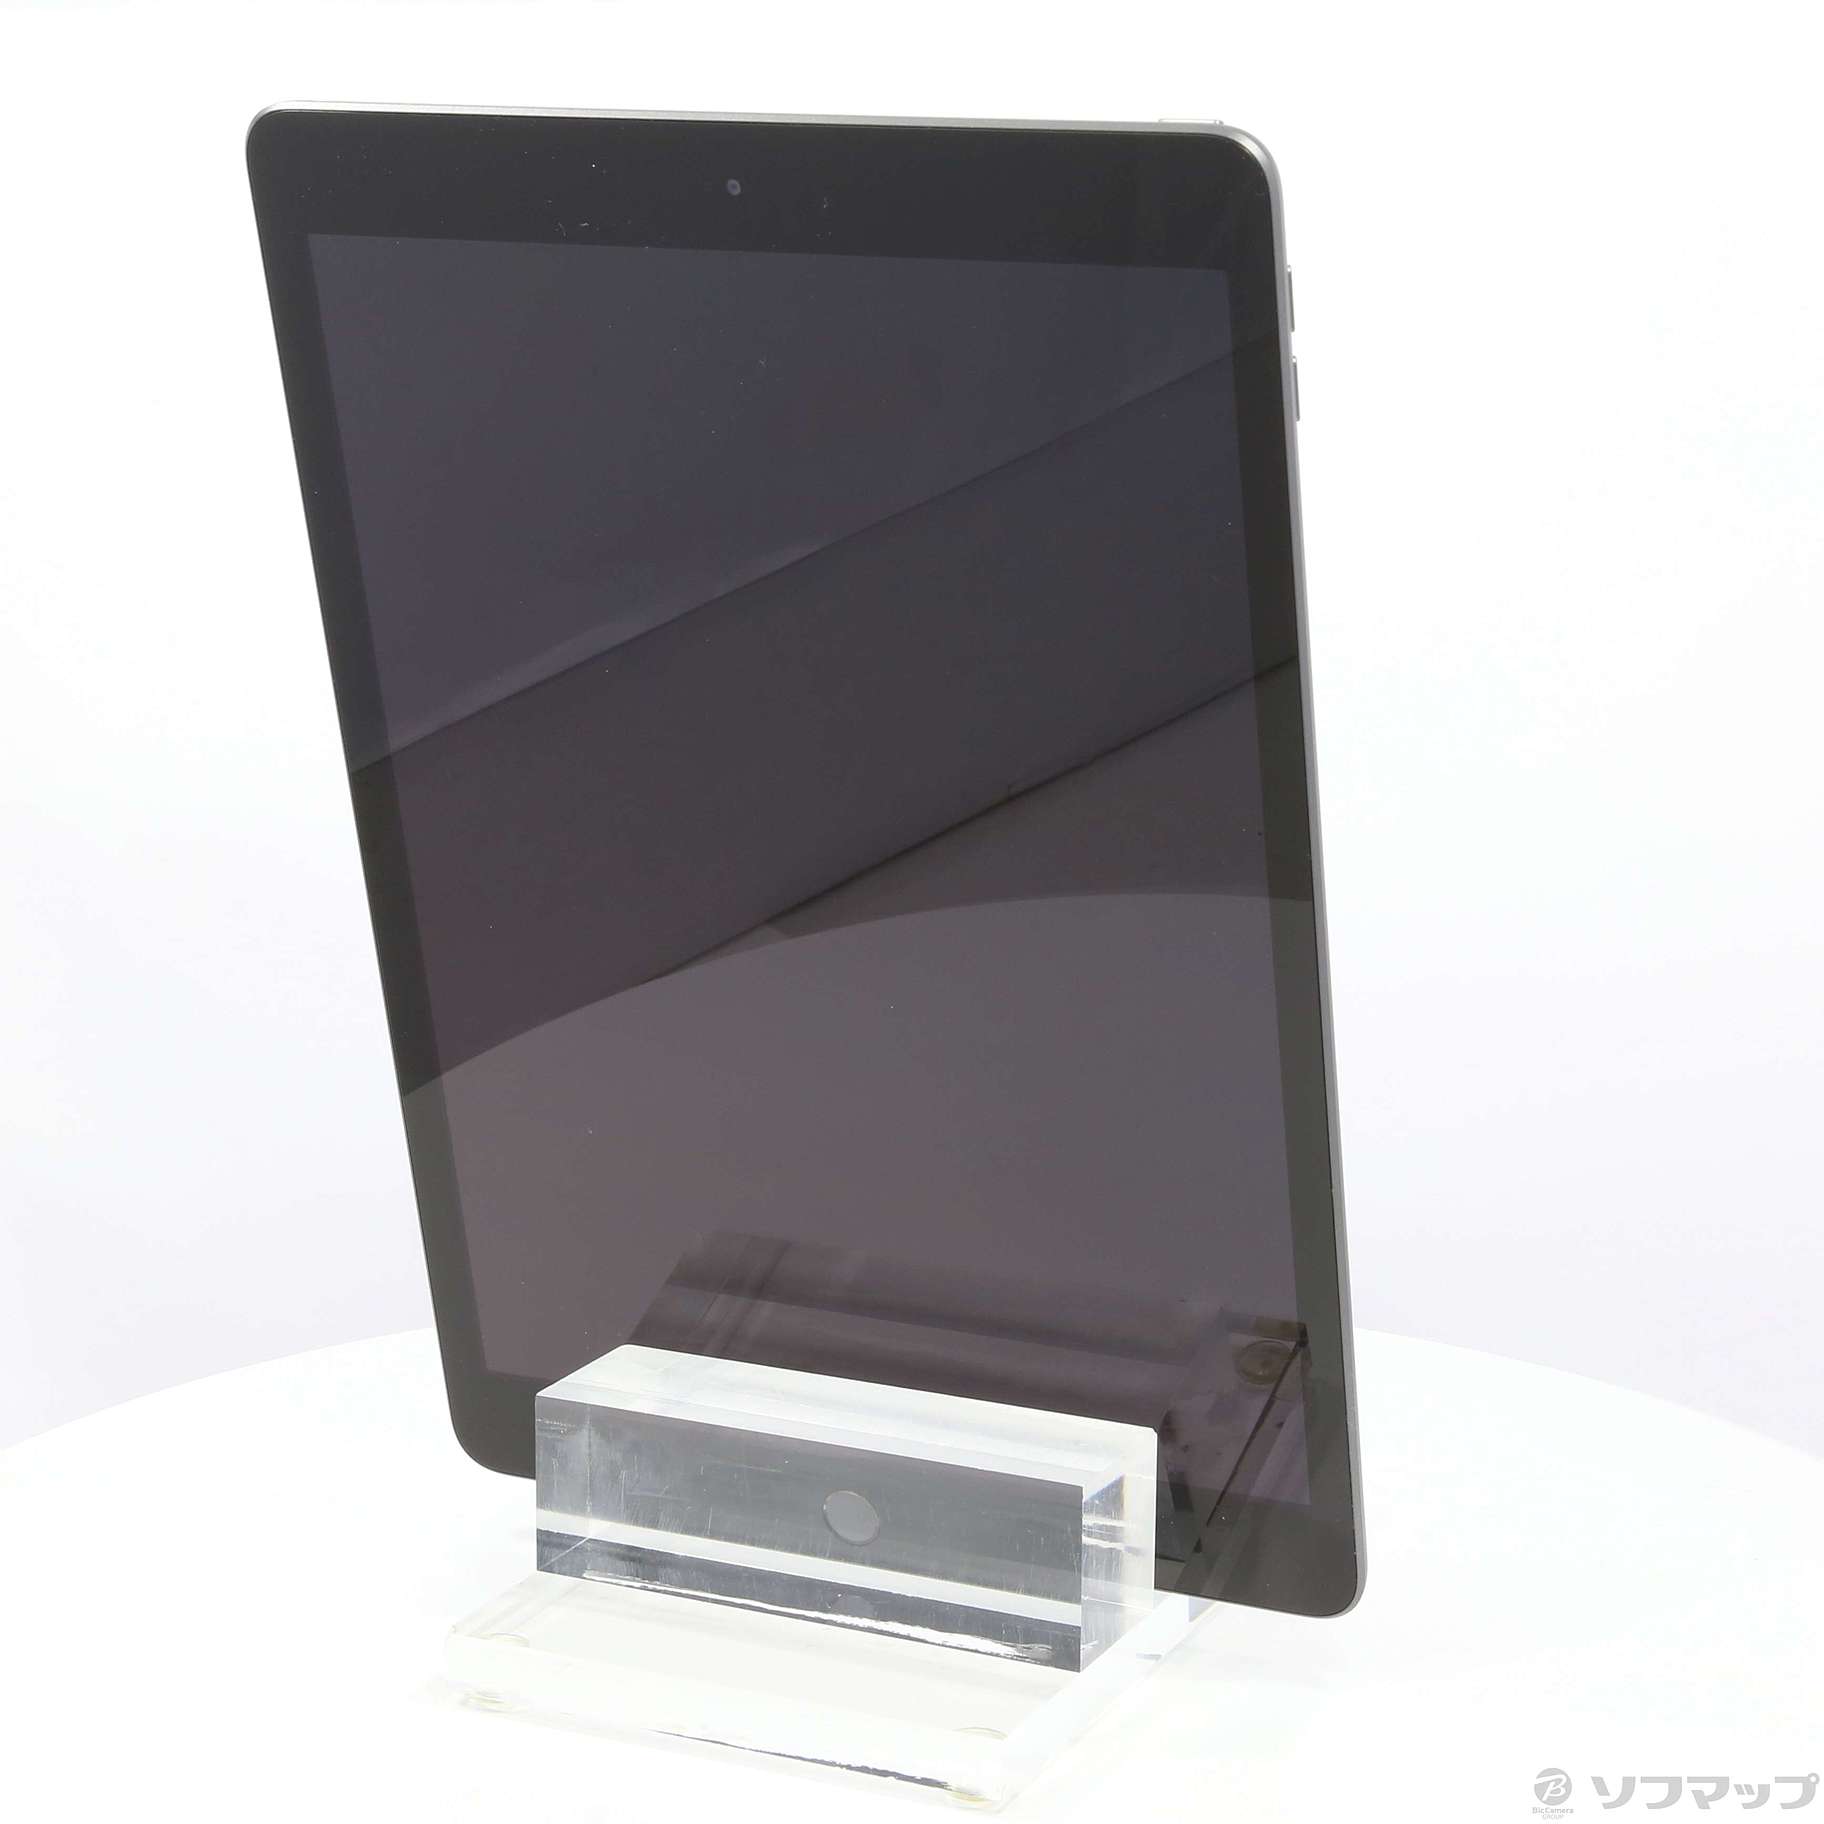 【楽天市場】iPad MW742J/A Space Gray 新品未開封 タブレット